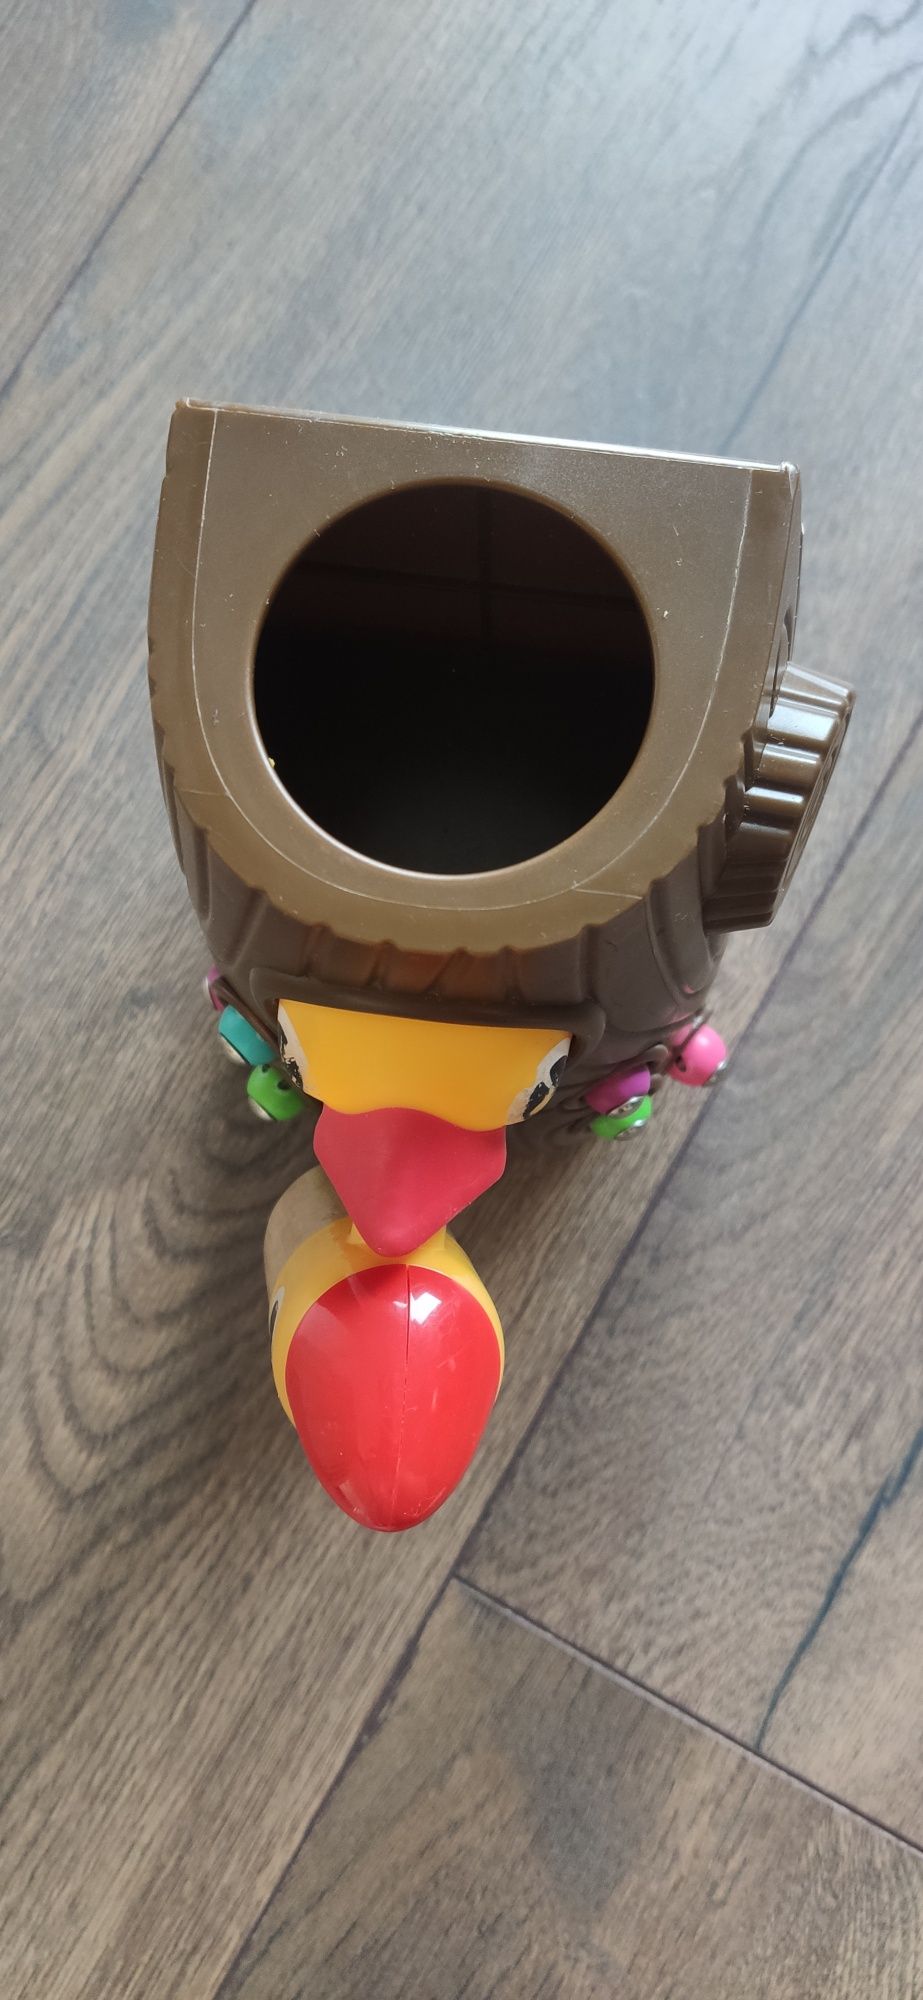 Magnetyczna dziupla z pisklętami Joueco zabawka montessori